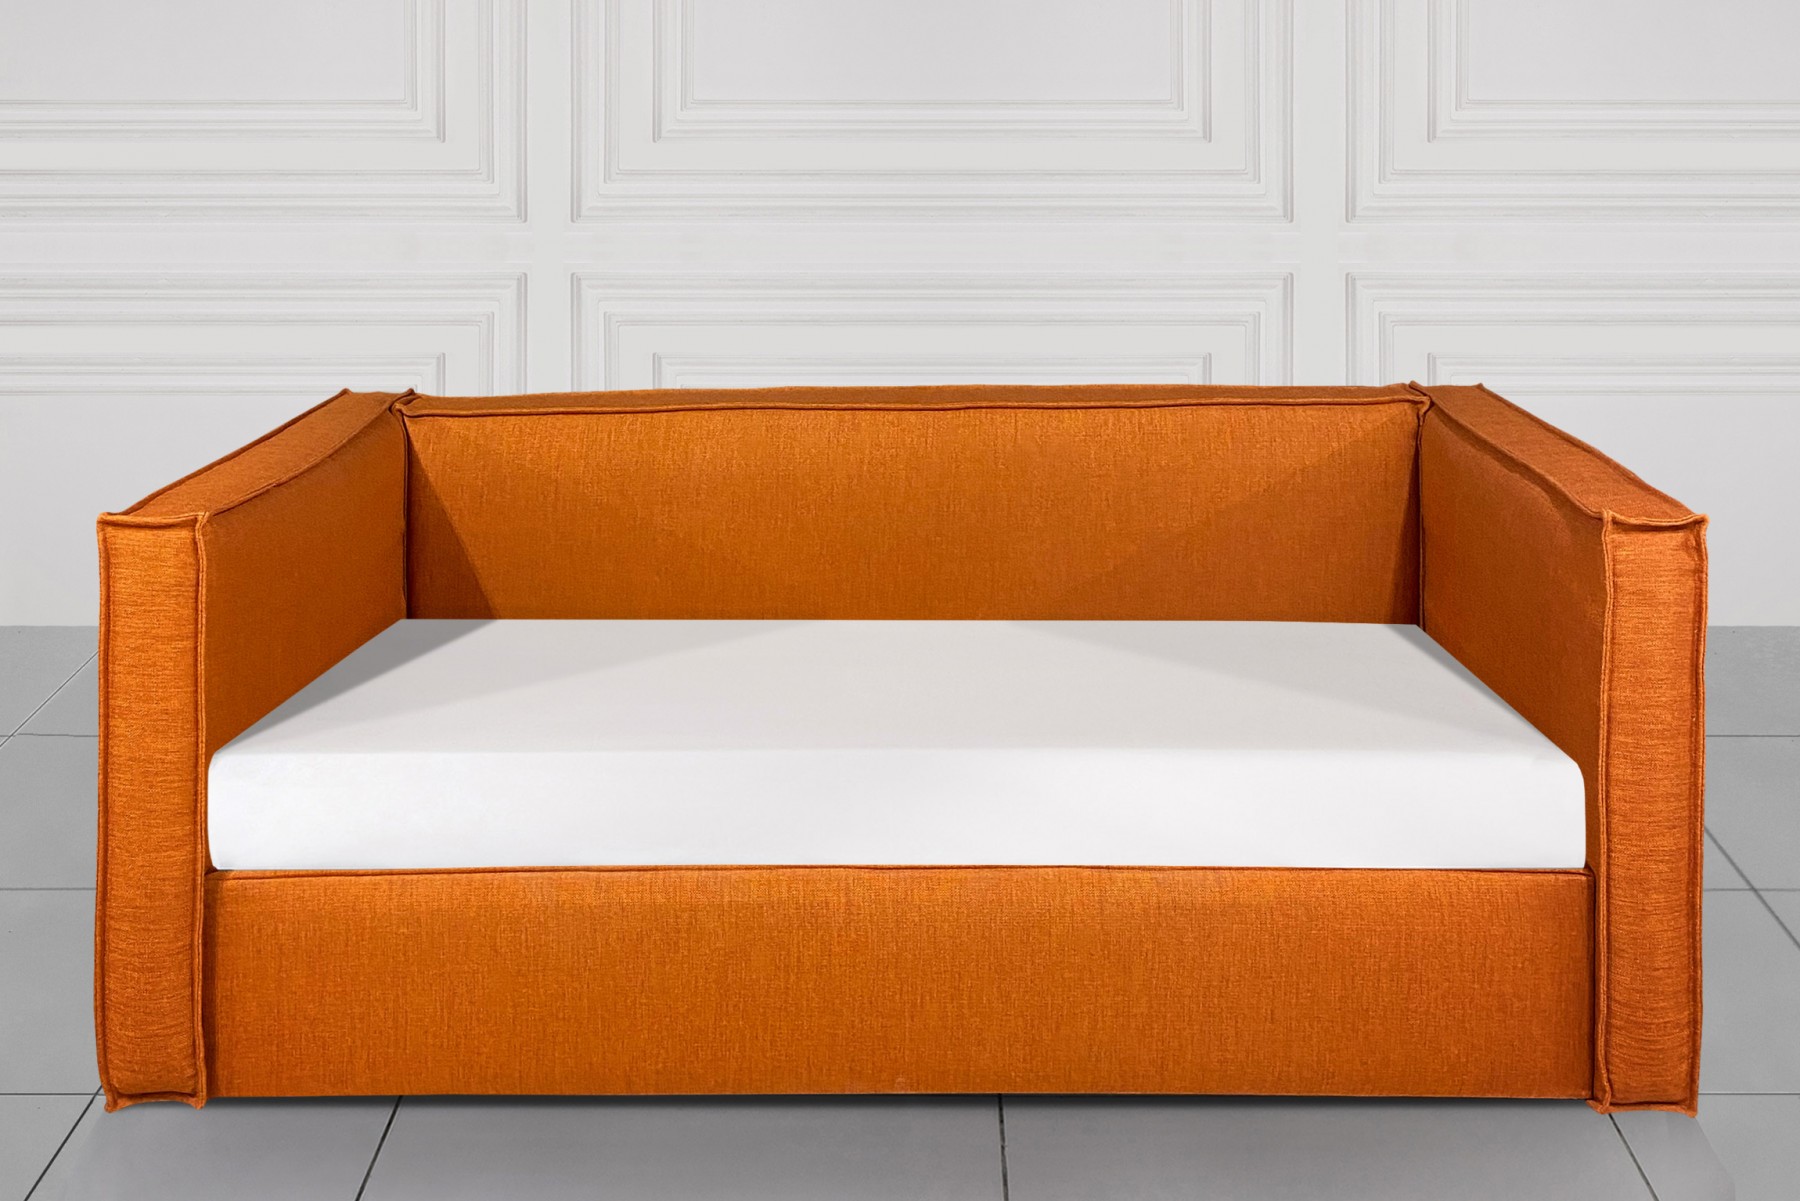  Кровать Orange